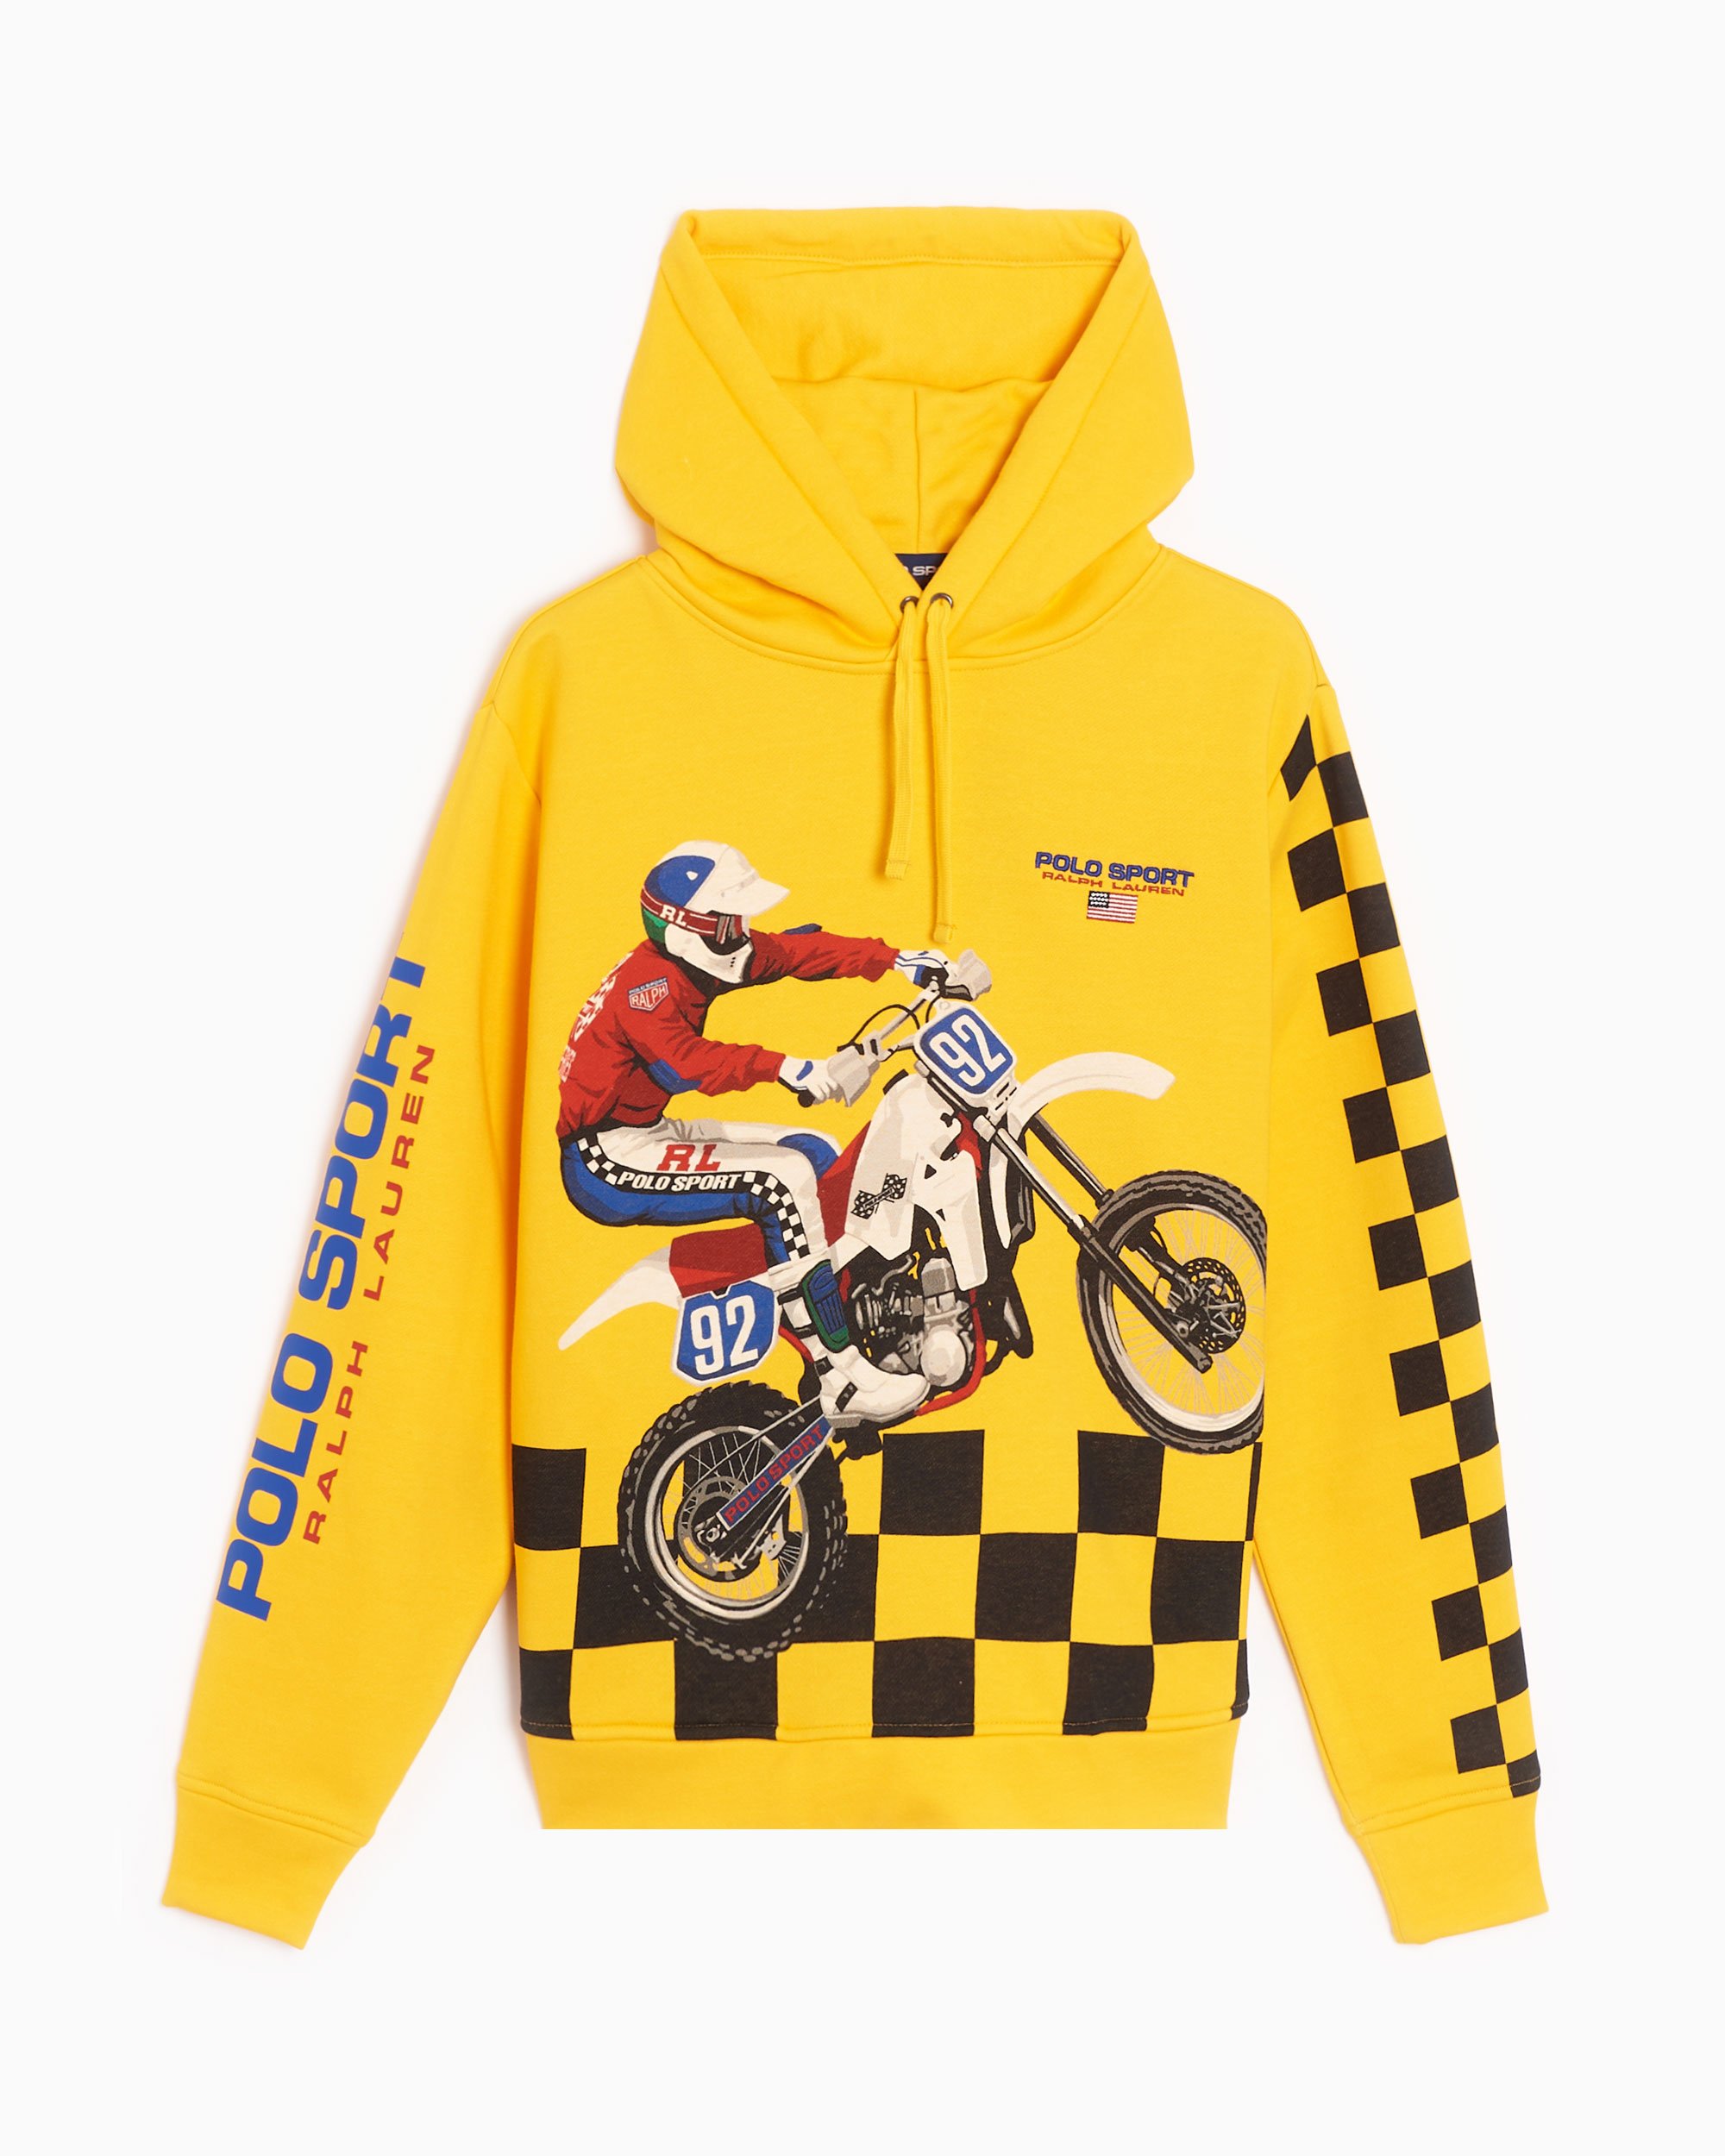 Polo Ralph Lauren Motocross Men's Hoodie Yellow 710904545001| Online at